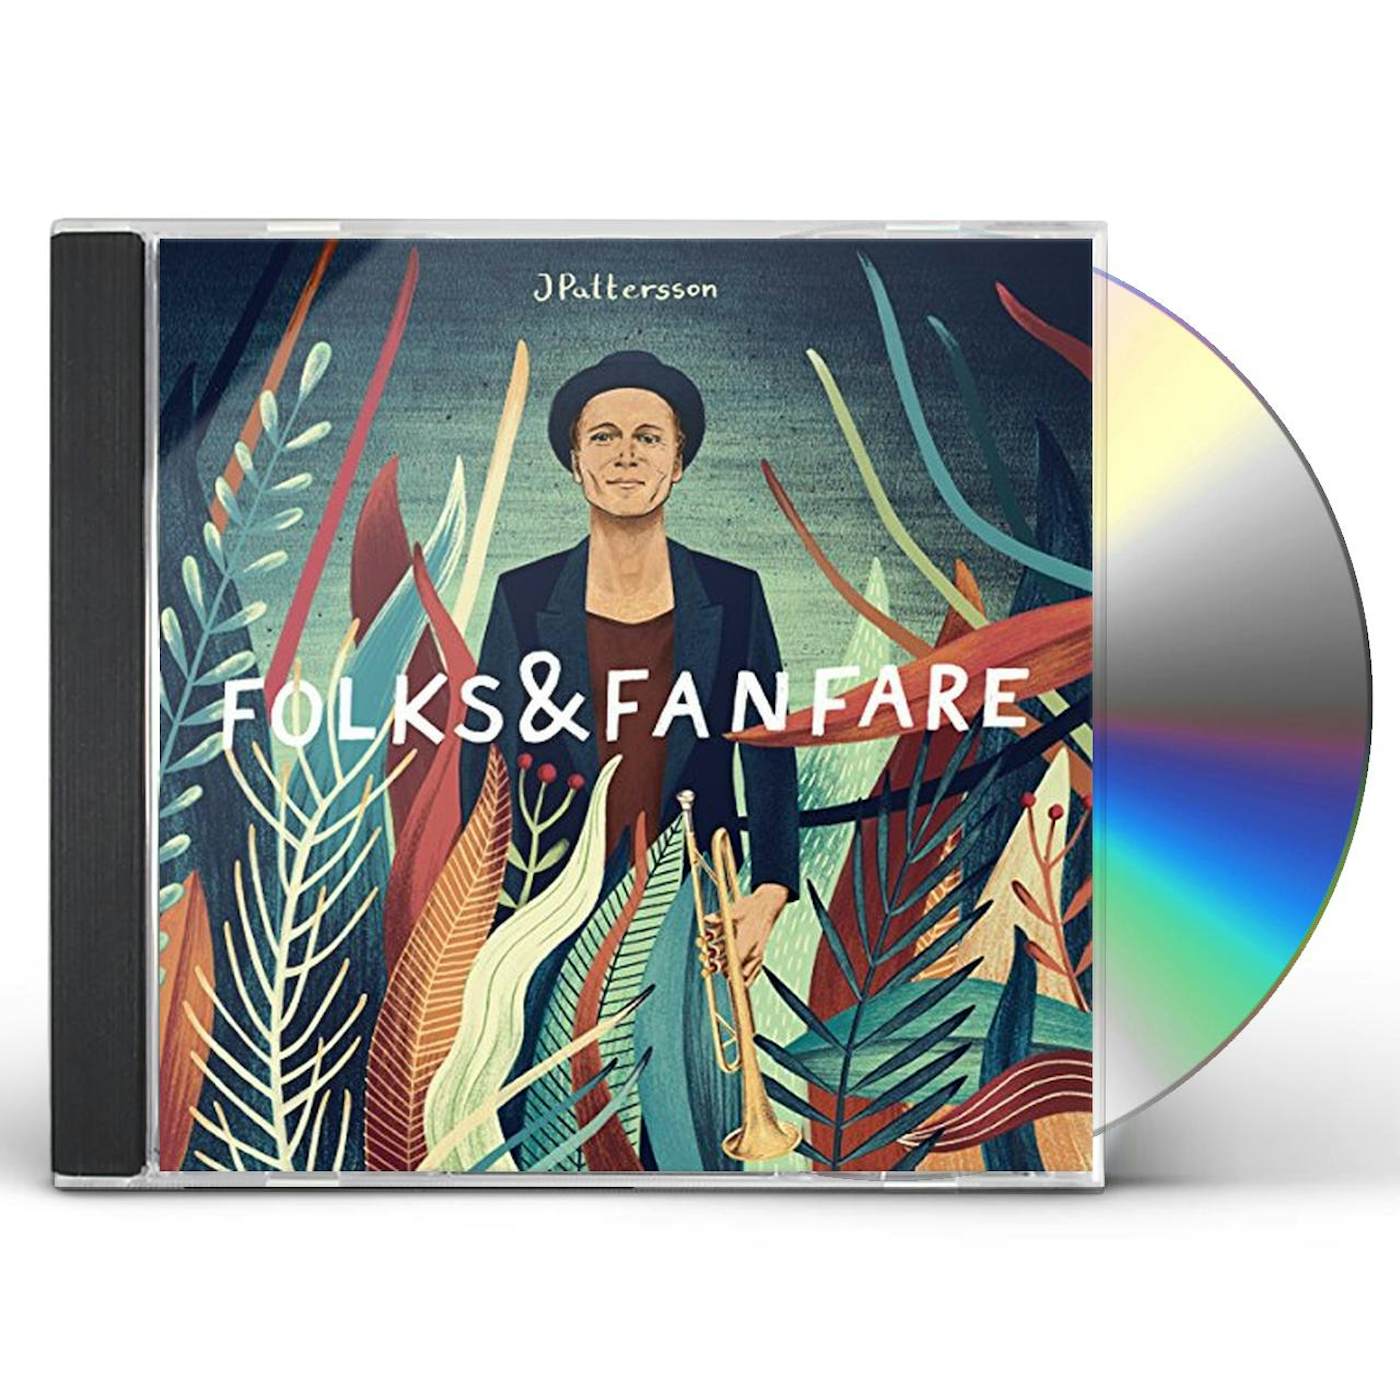 JPattersson FOLKS & FANFARE CD